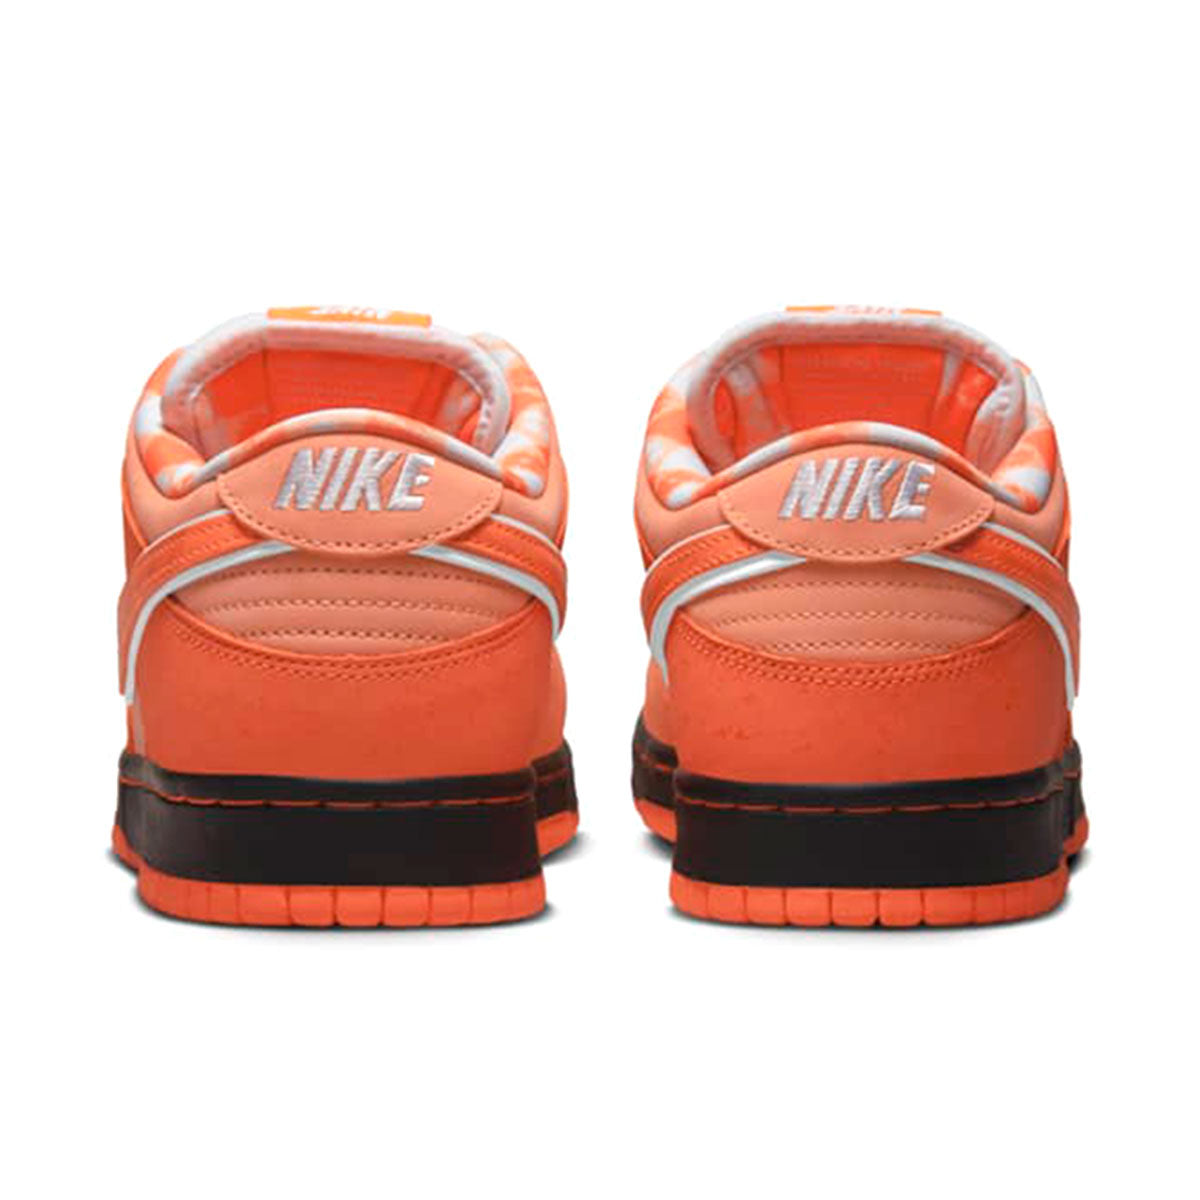 240107017-1 FD8776-800 Concepts × Nike SB Dunk Low SP “Orange Lobster”